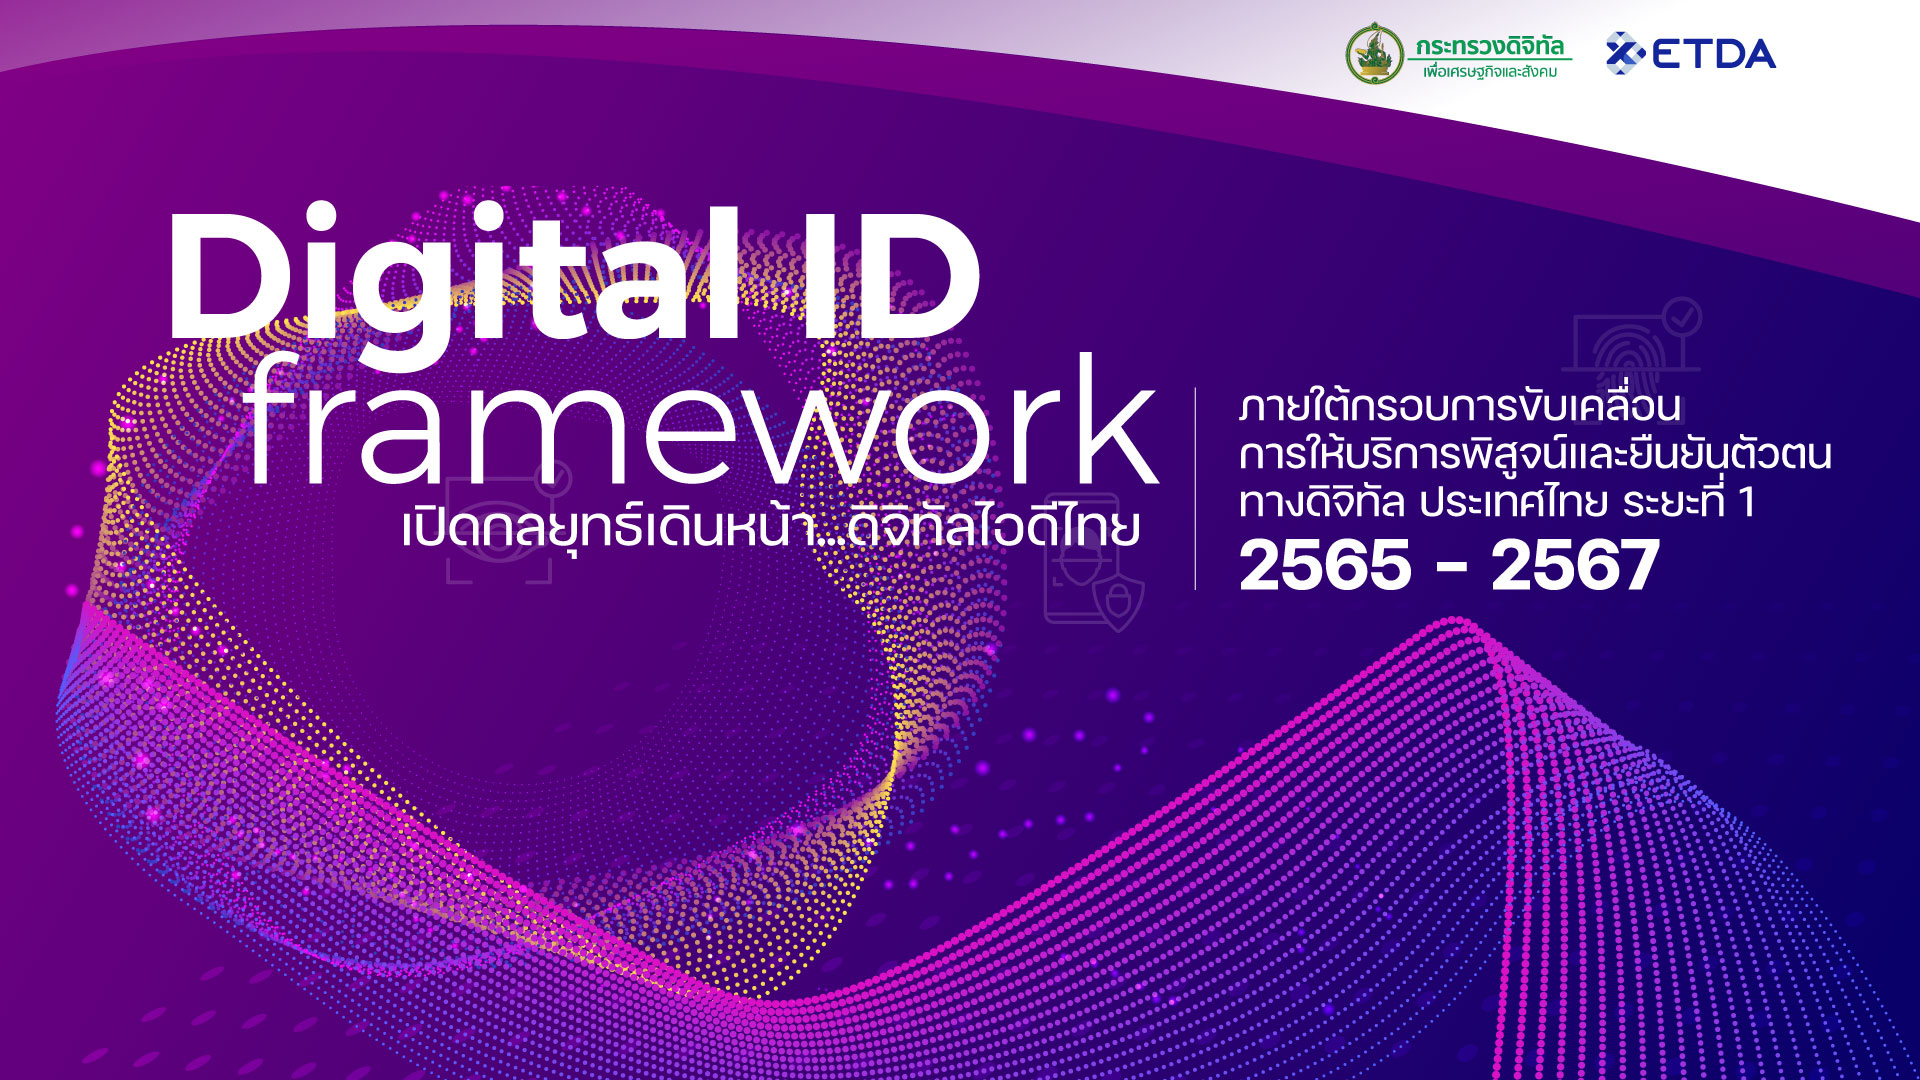 ดีอีเอส จับมือ ETDA ชวน 6 หน่วยงาน อัปเดตความคืบหน้า Digital ID ประเทศ ตั้งเป้าคนไทยต้องเข้าถึงได้หลายบริการได้ด้วย Digital ID เดียว!